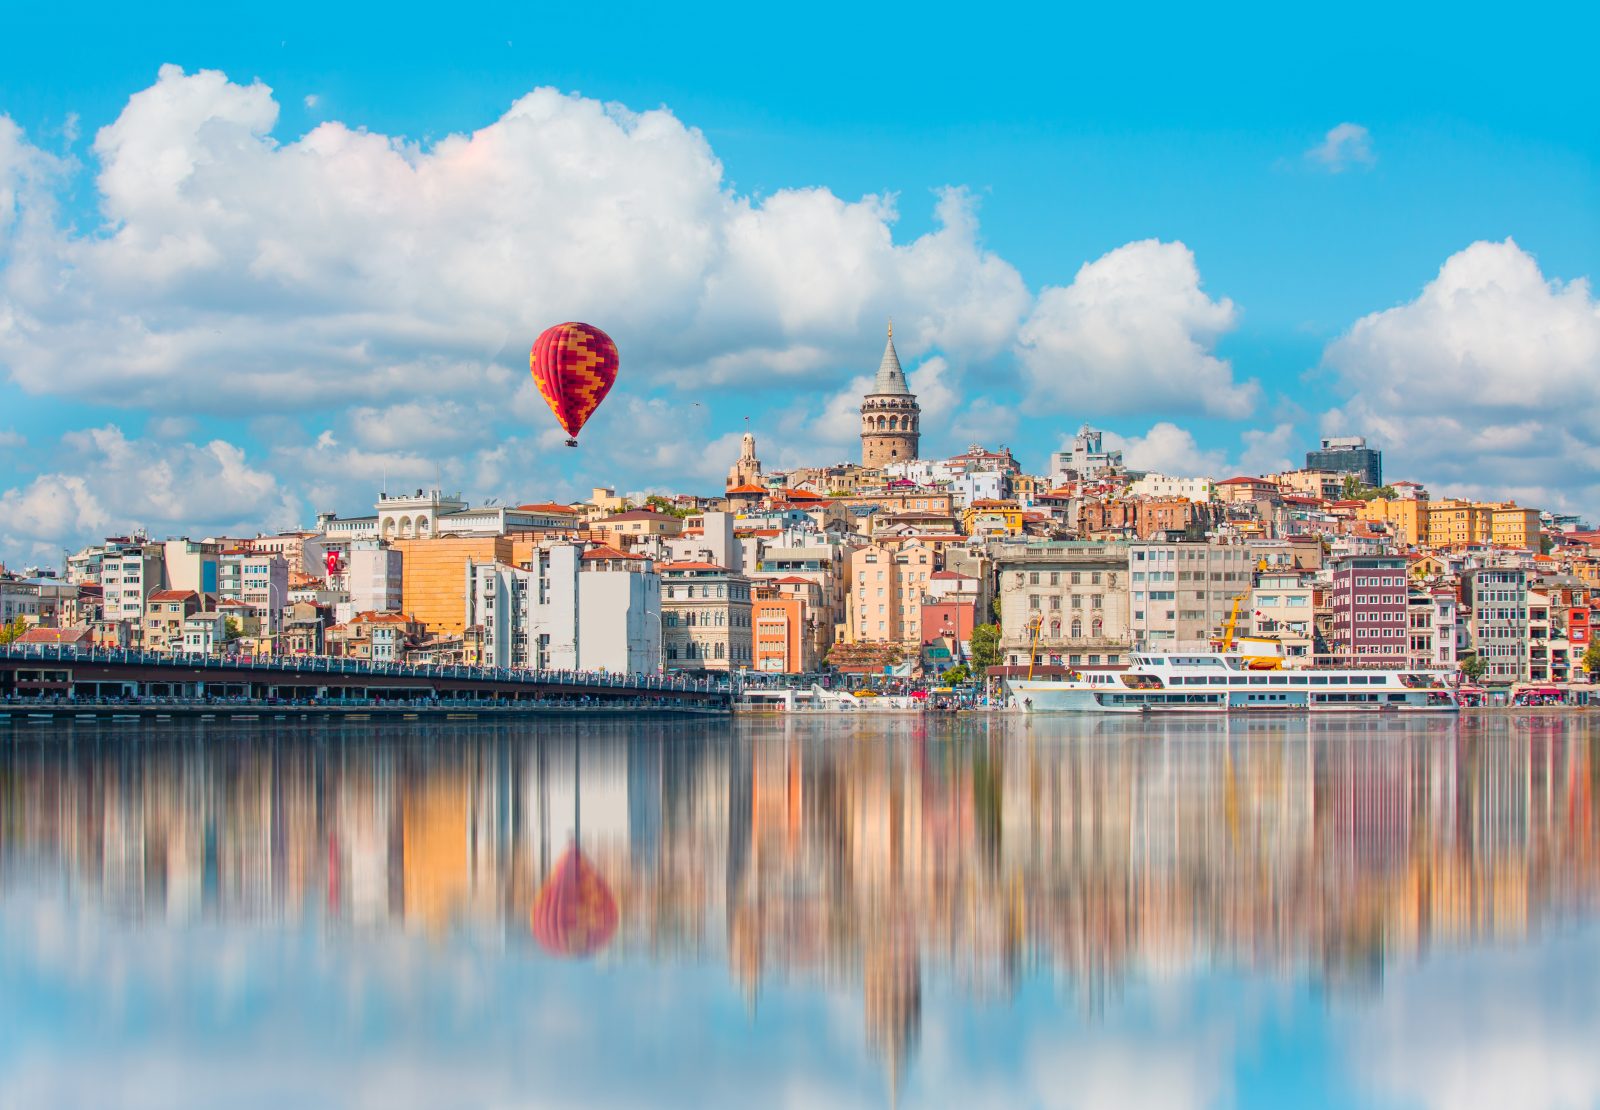 Balon nad wieżą Galata, Istambuł, Turcja